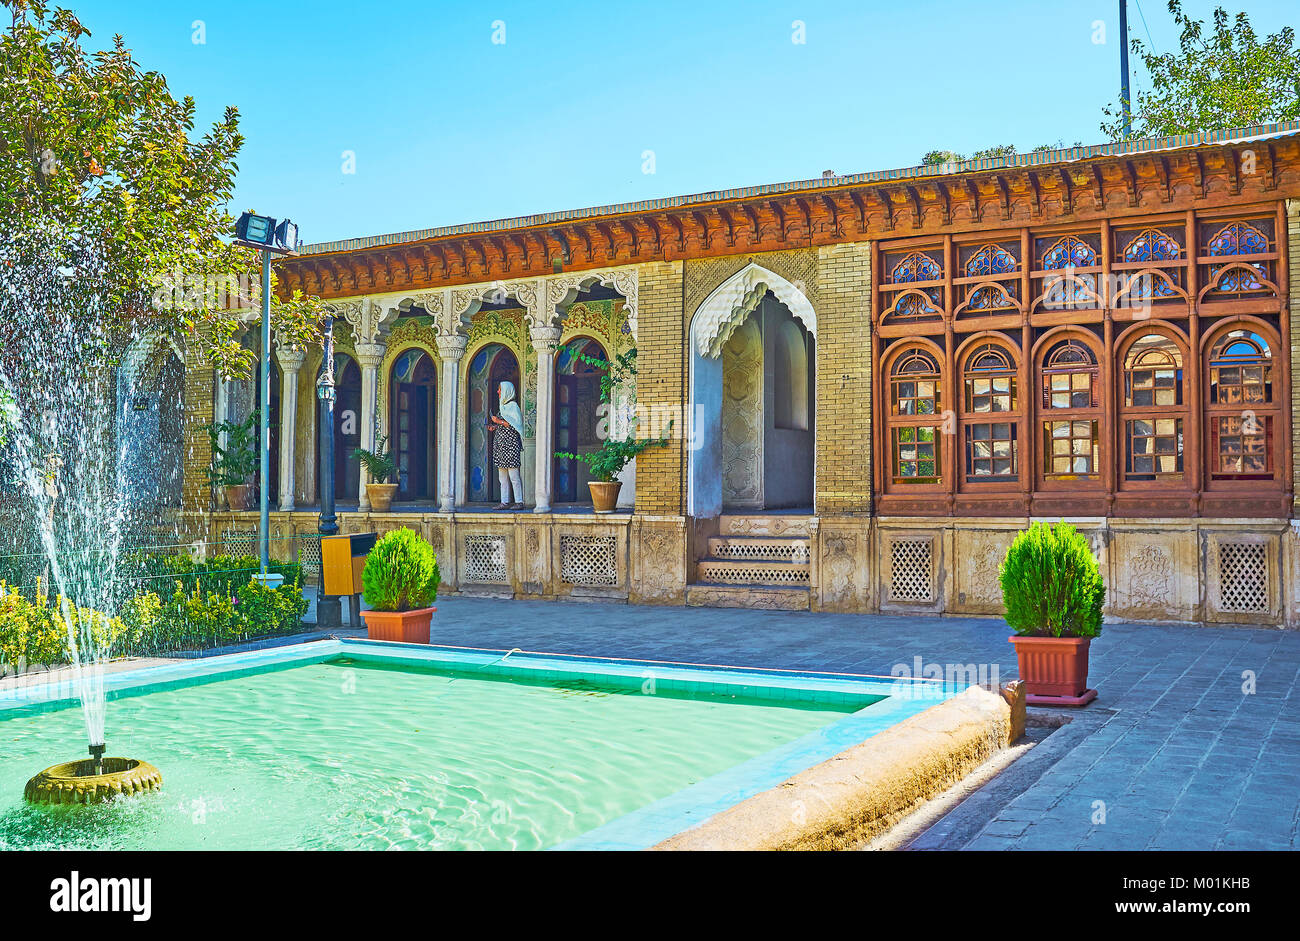 SHIRAZ, IRAN - 12 octobre 2017 : l'architecture de l'hôtel particulier avec Ol-Molk Zinat médiéval persan traditionnel jardin avec fontaines et décorations Banque D'Images